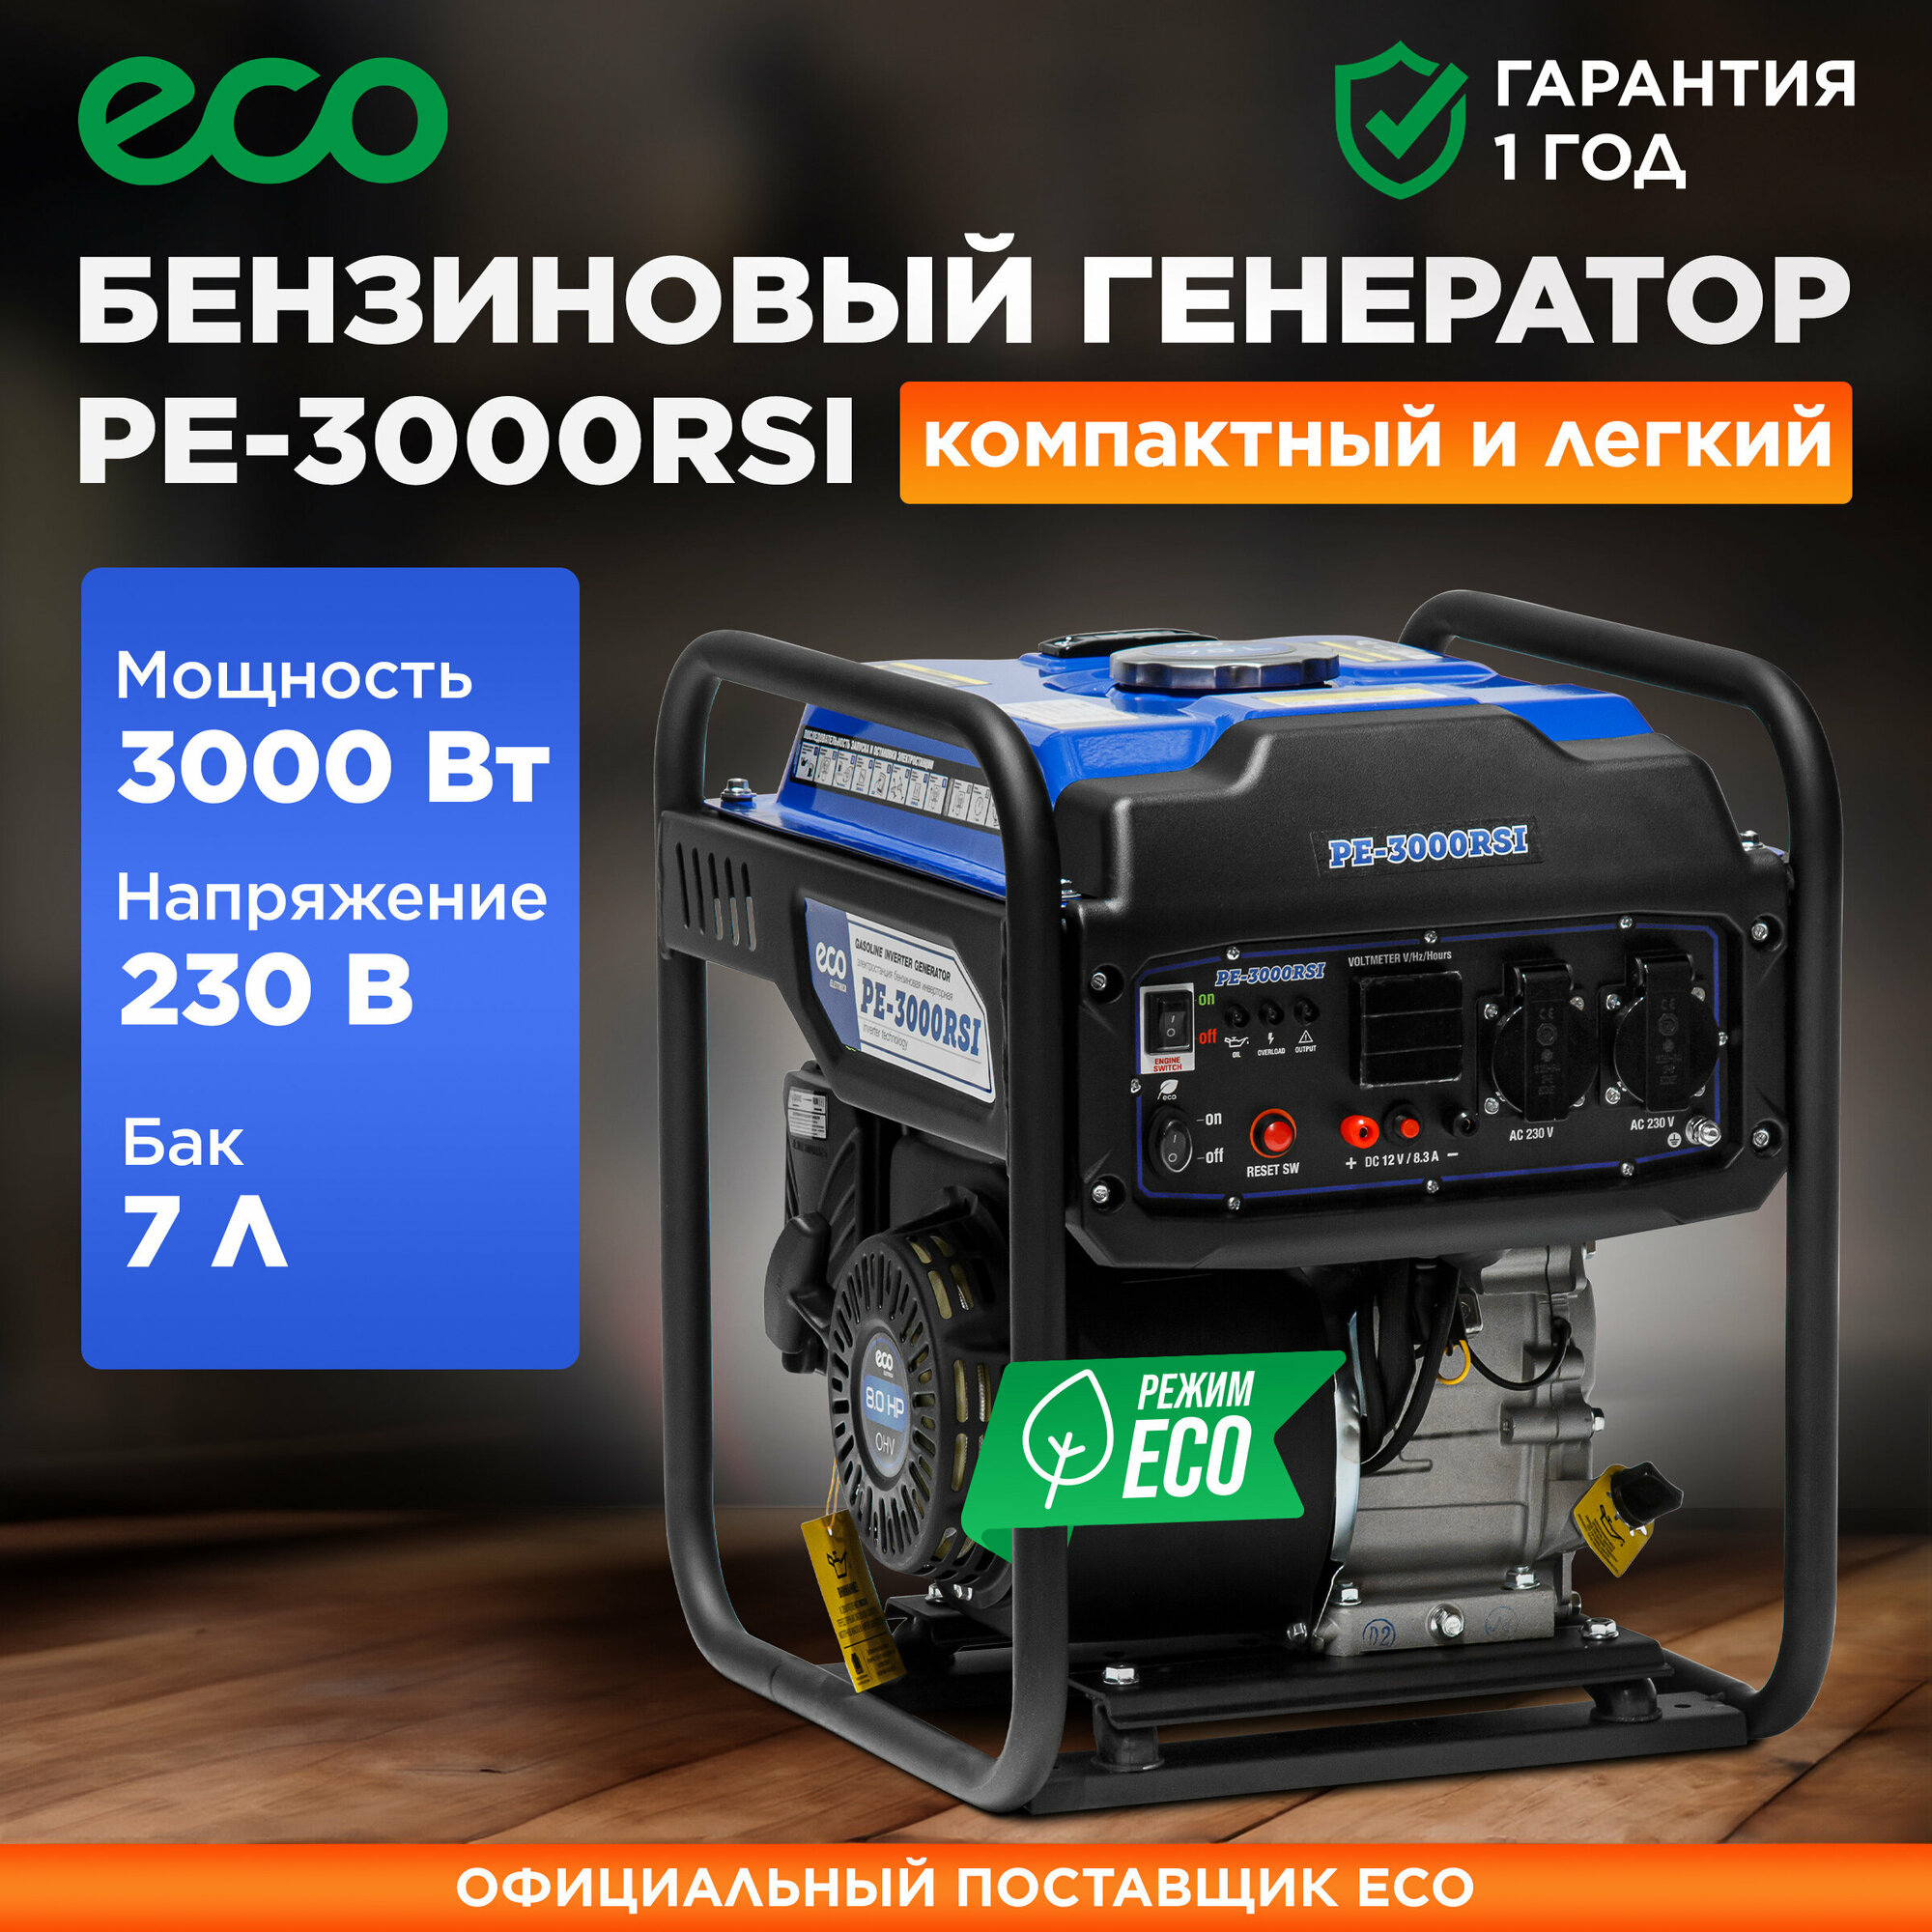 Электростанция (генератор бензиновый) ECO PE-3000RSI (EC1561-7)